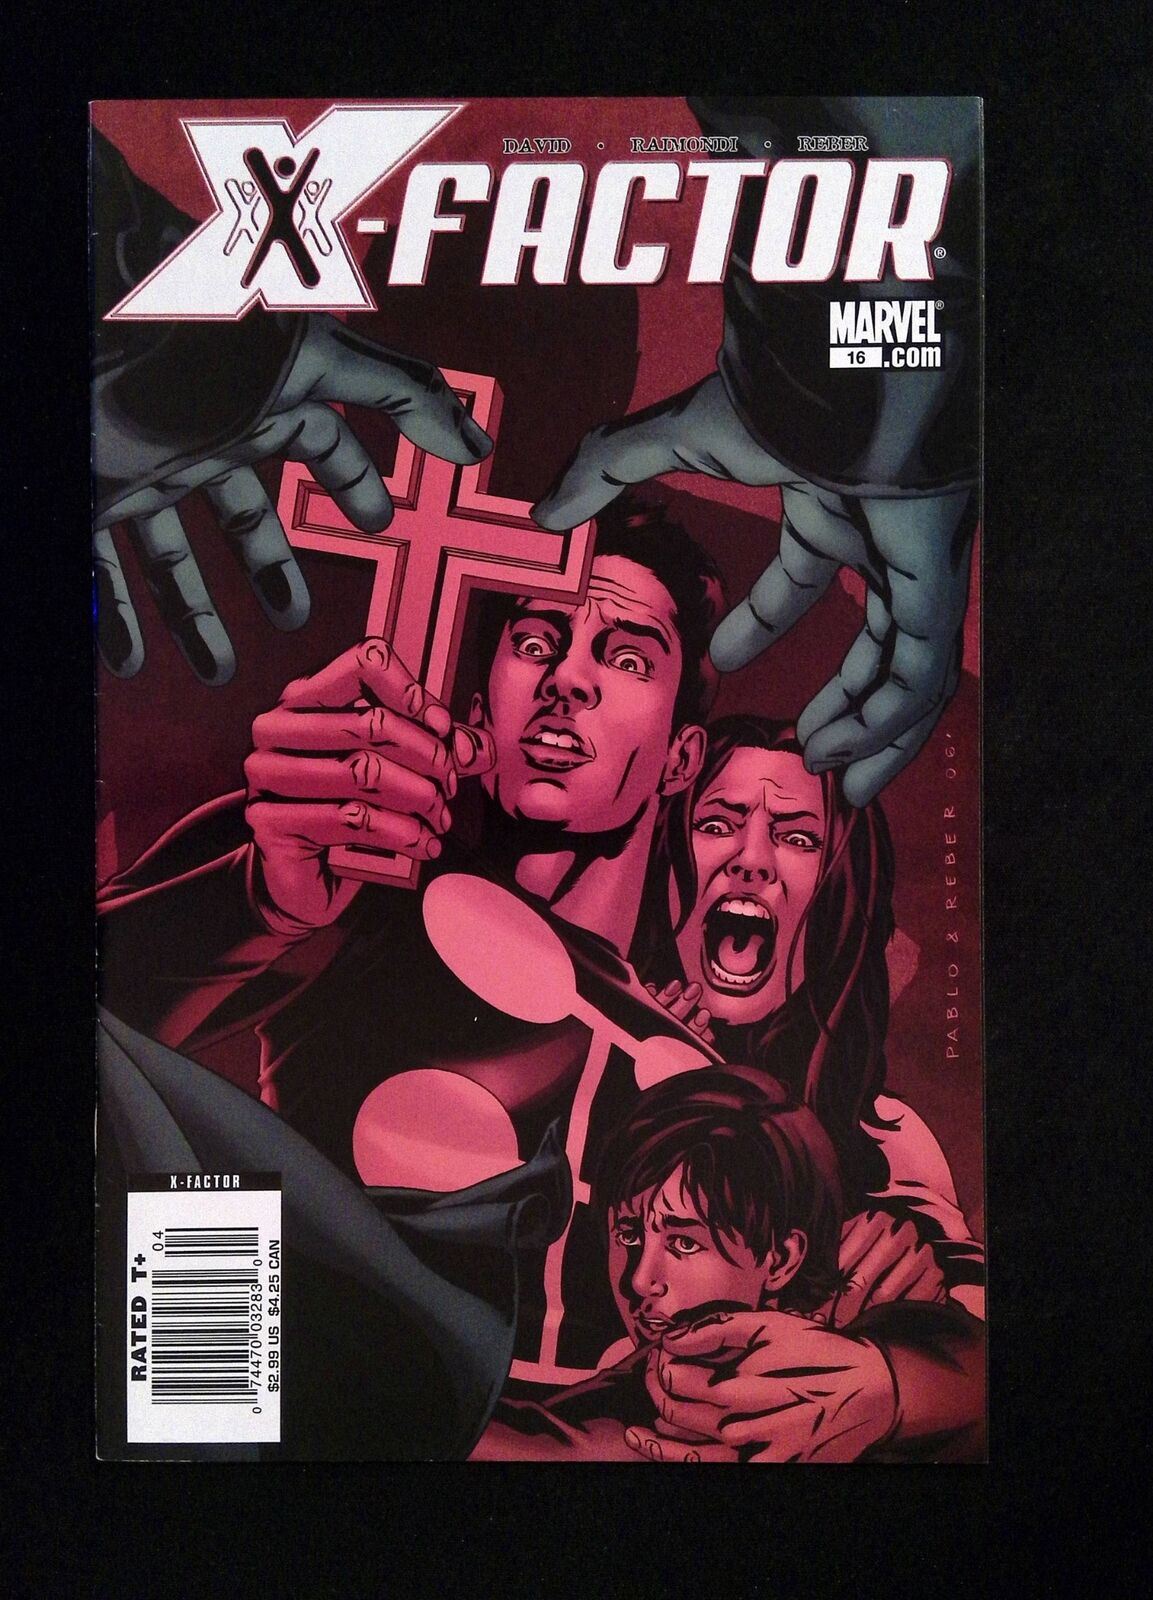 X-Factor #16 (3RD SERIES) MARVEL Comics 2007 VF+ NEWSSTAND